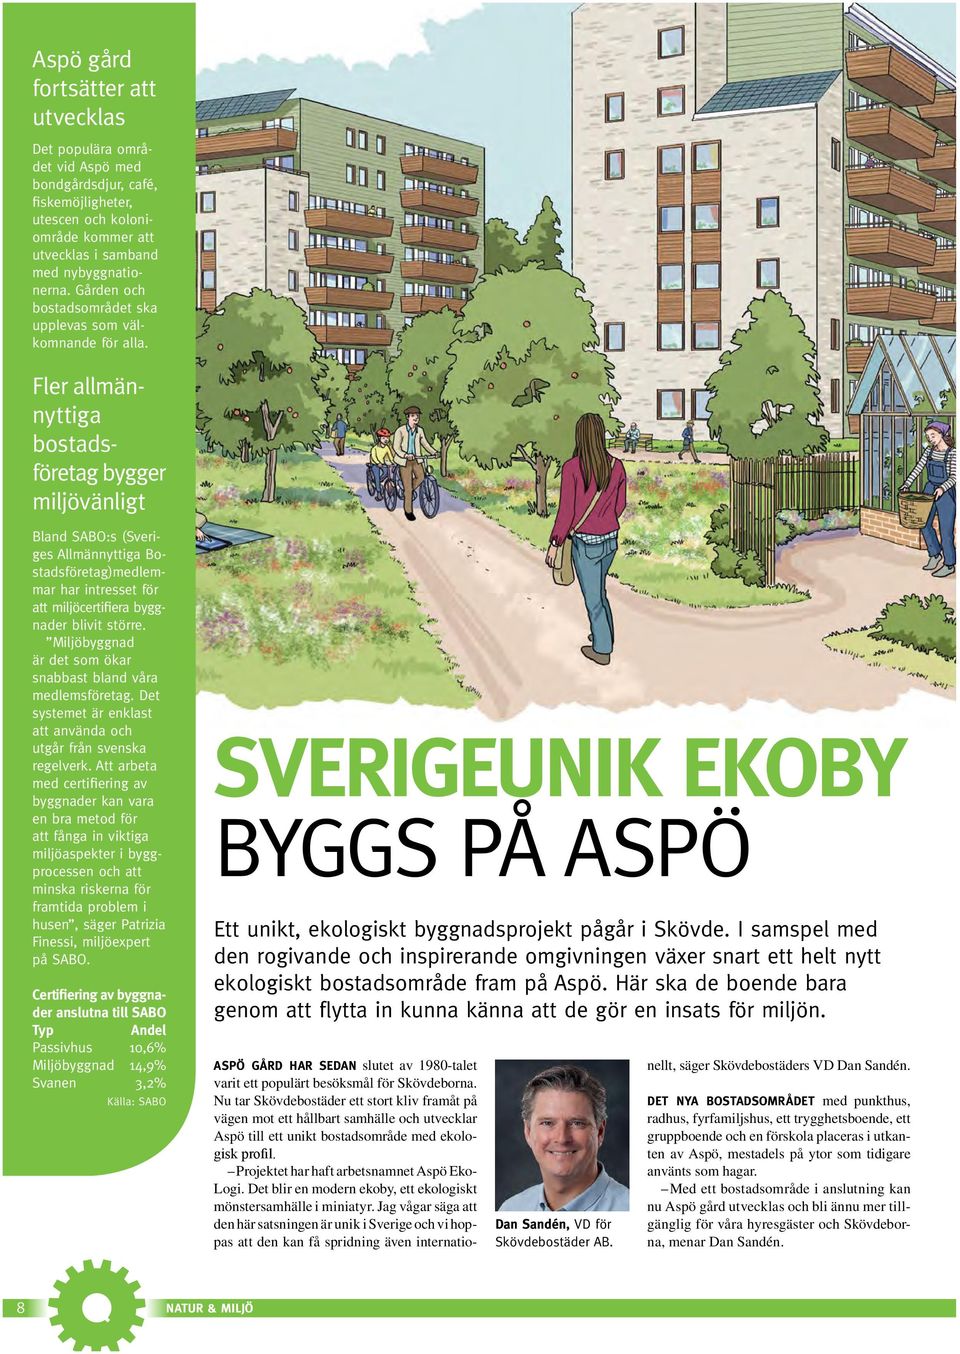 Fler allmännyttiga bostadsföretag bygger miljövänligt Bland SABO:s (Sveriges Allmännyttiga Bostadsföretag)medlemmar har intresset för att miljöcertifiera byggnader blivit större.